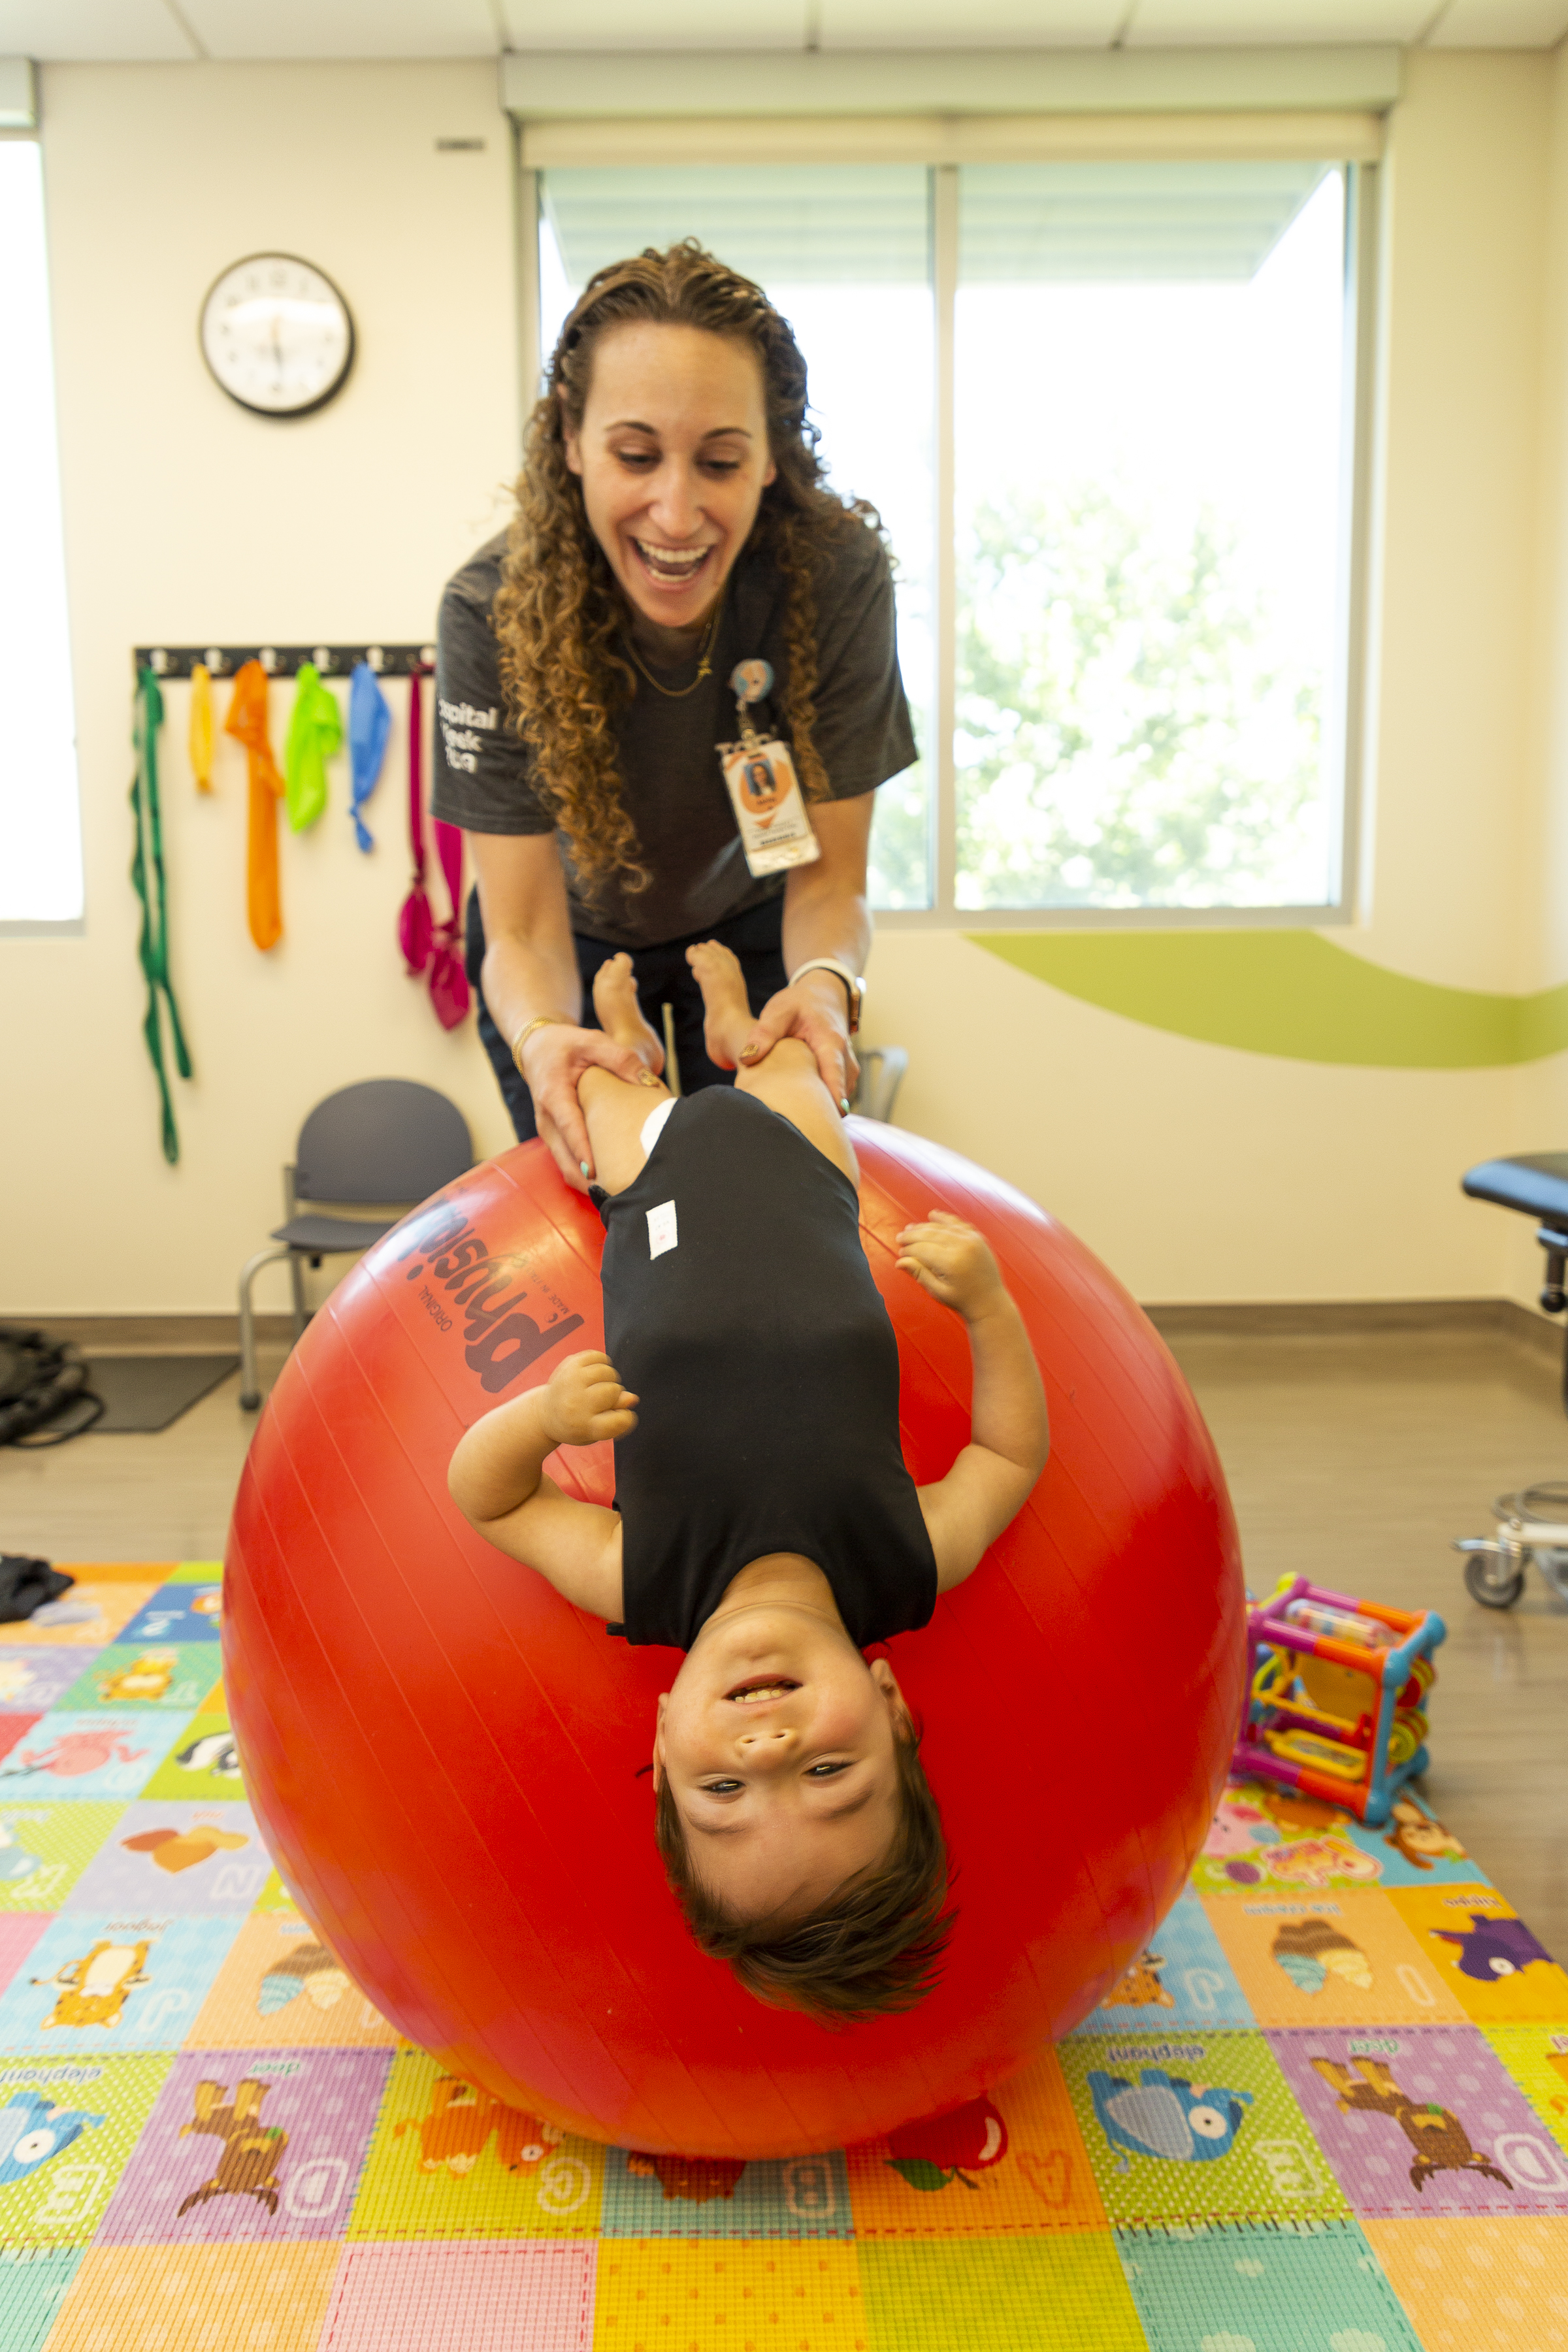 Un trabajador de la salud sostiene a un niño pequeño por las piernas mientras se recuesta sobre una pelota inflable gigante. Se encuentran en una colorida sala de rehabilitación adaptada a los niños.